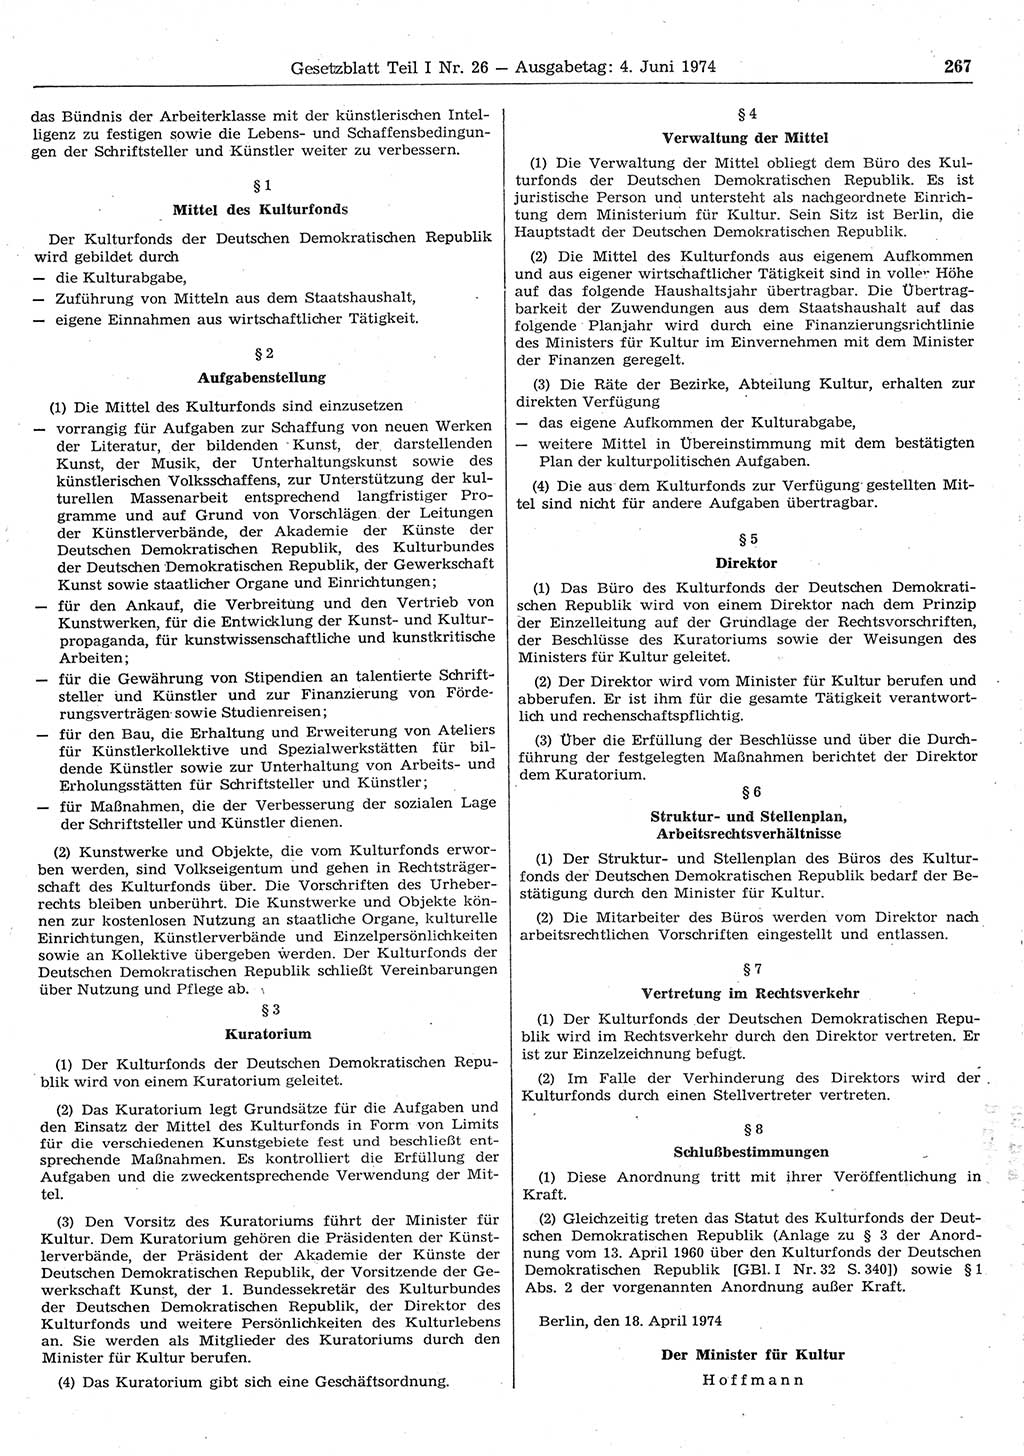 Gesetzblatt (GBl.) der Deutschen Demokratischen Republik (DDR) Teil Ⅰ 1974, Seite 267 (GBl. DDR Ⅰ 1974, S. 267)